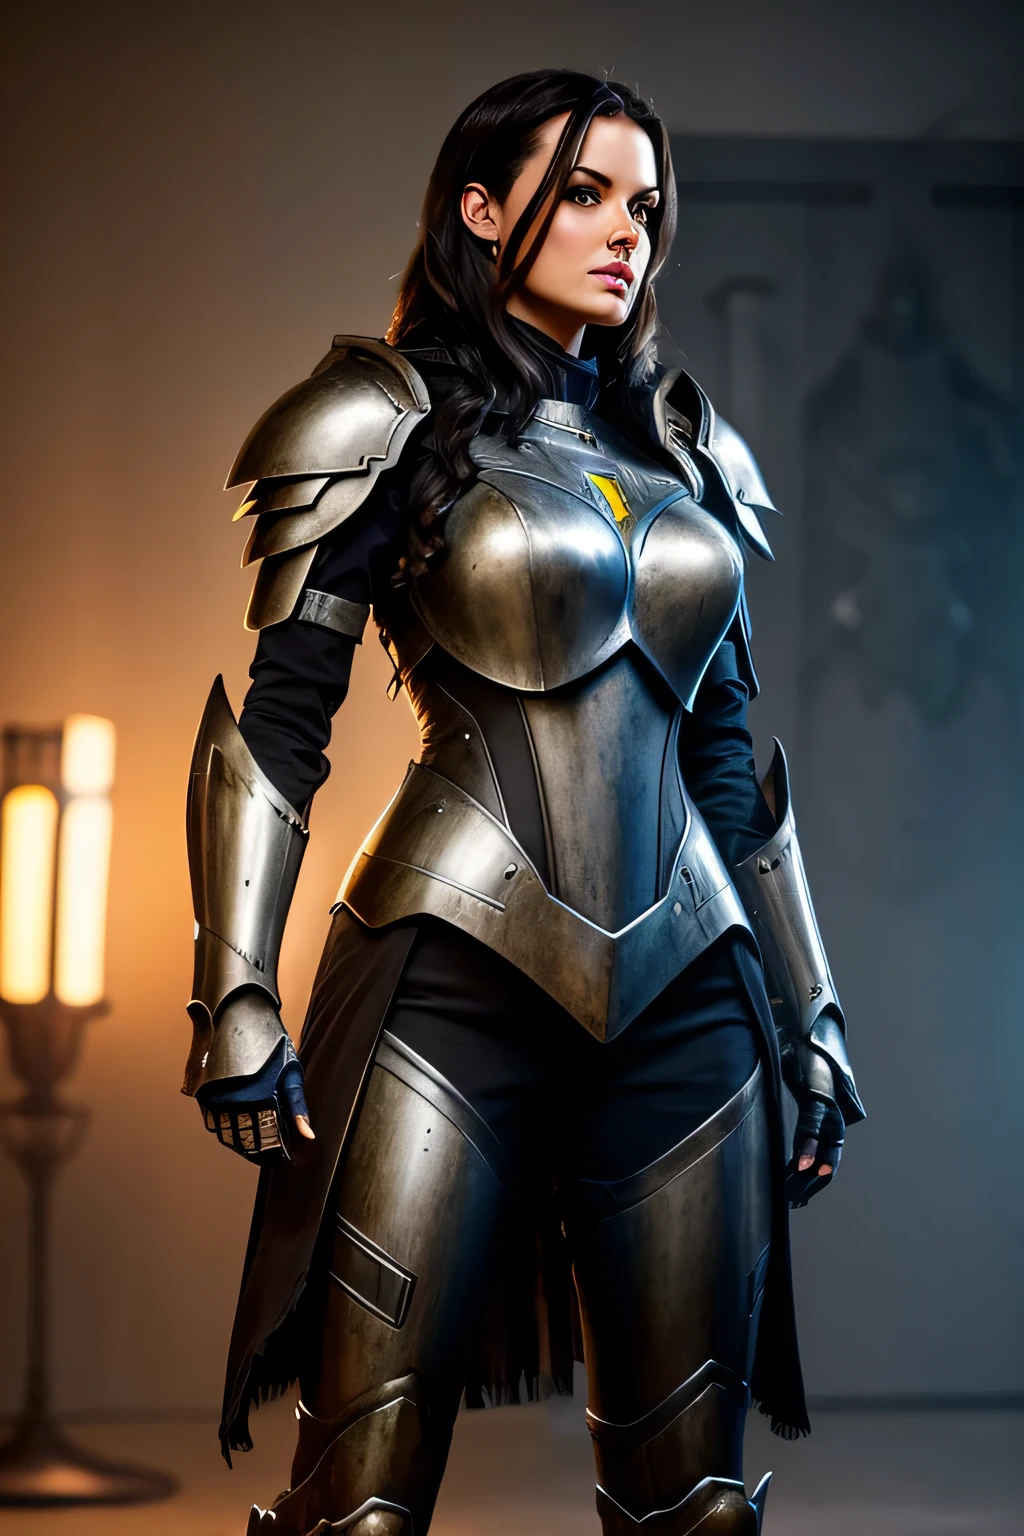 Mujer alta y hermosa con cabello oscuro y una armadura robótica muy realista y detallada.